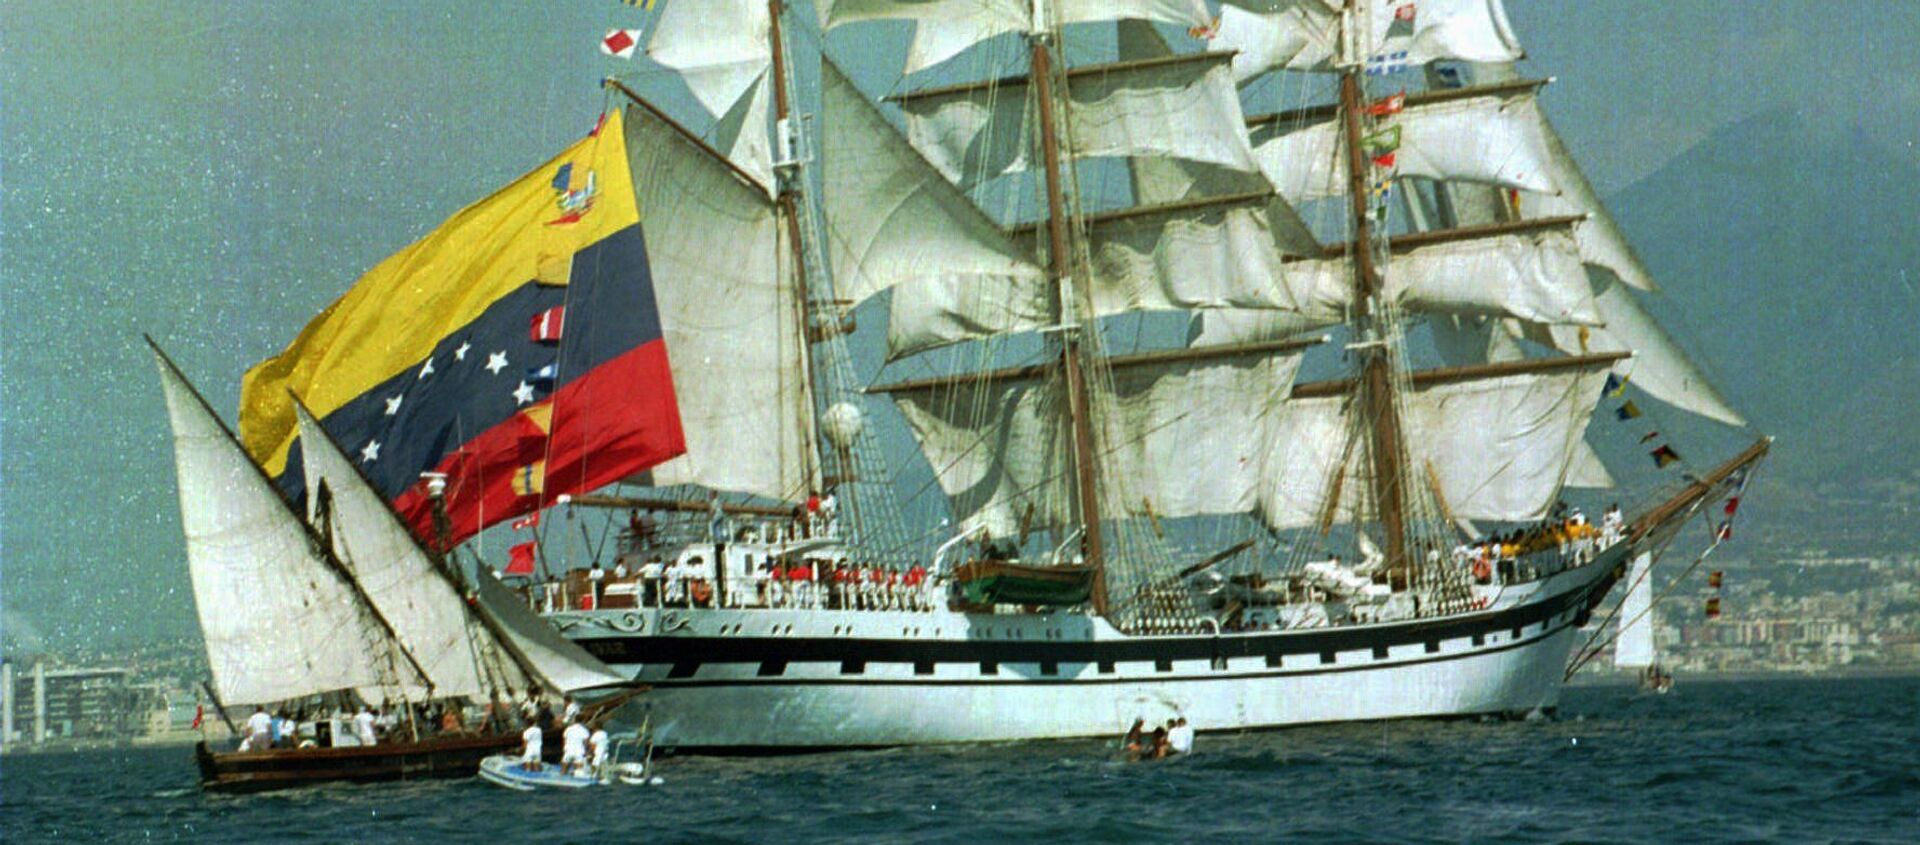 Un barco con la bandera de Venezuela (archivo) - Sputnik Mundo, 1920, 01.07.2019